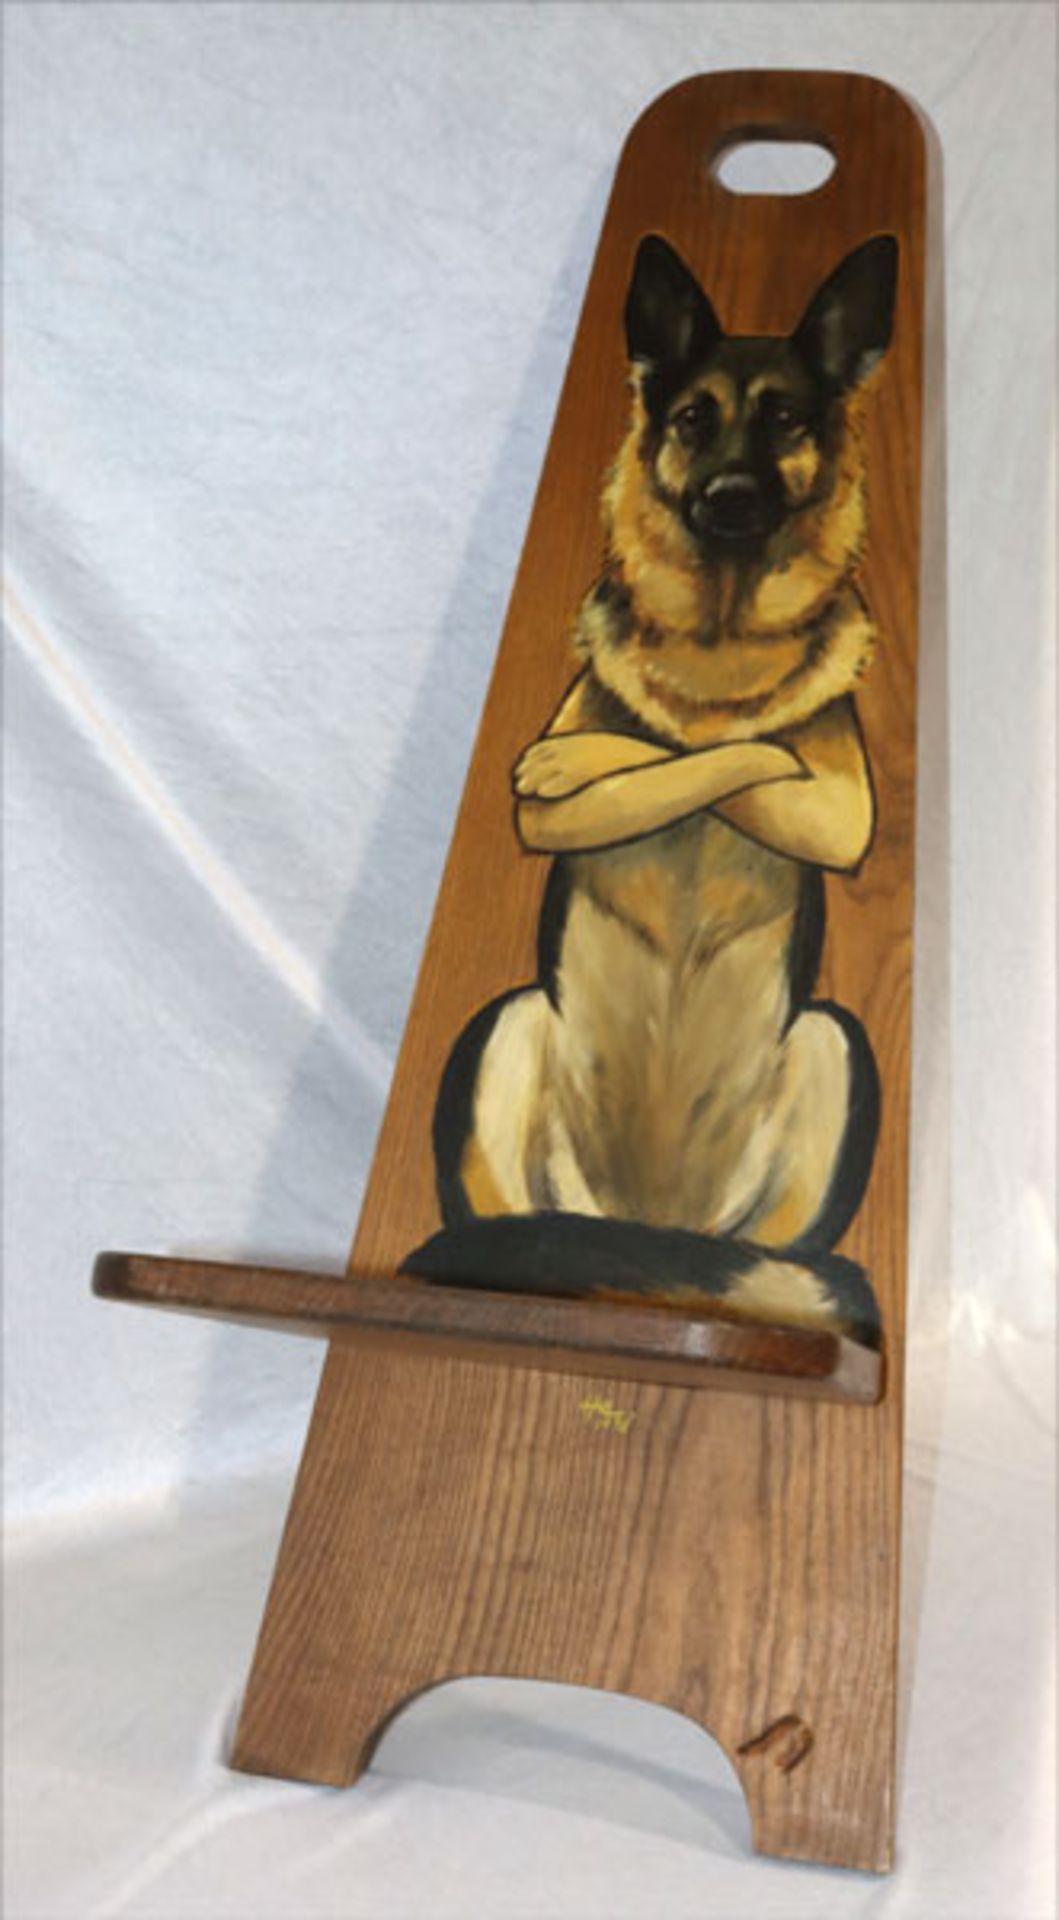 Holz Brettstuhl, Lehne mit Schäferhund bemalt, H 114 cm, B 34 cm, T 37 cm, Gebrauchsspuren